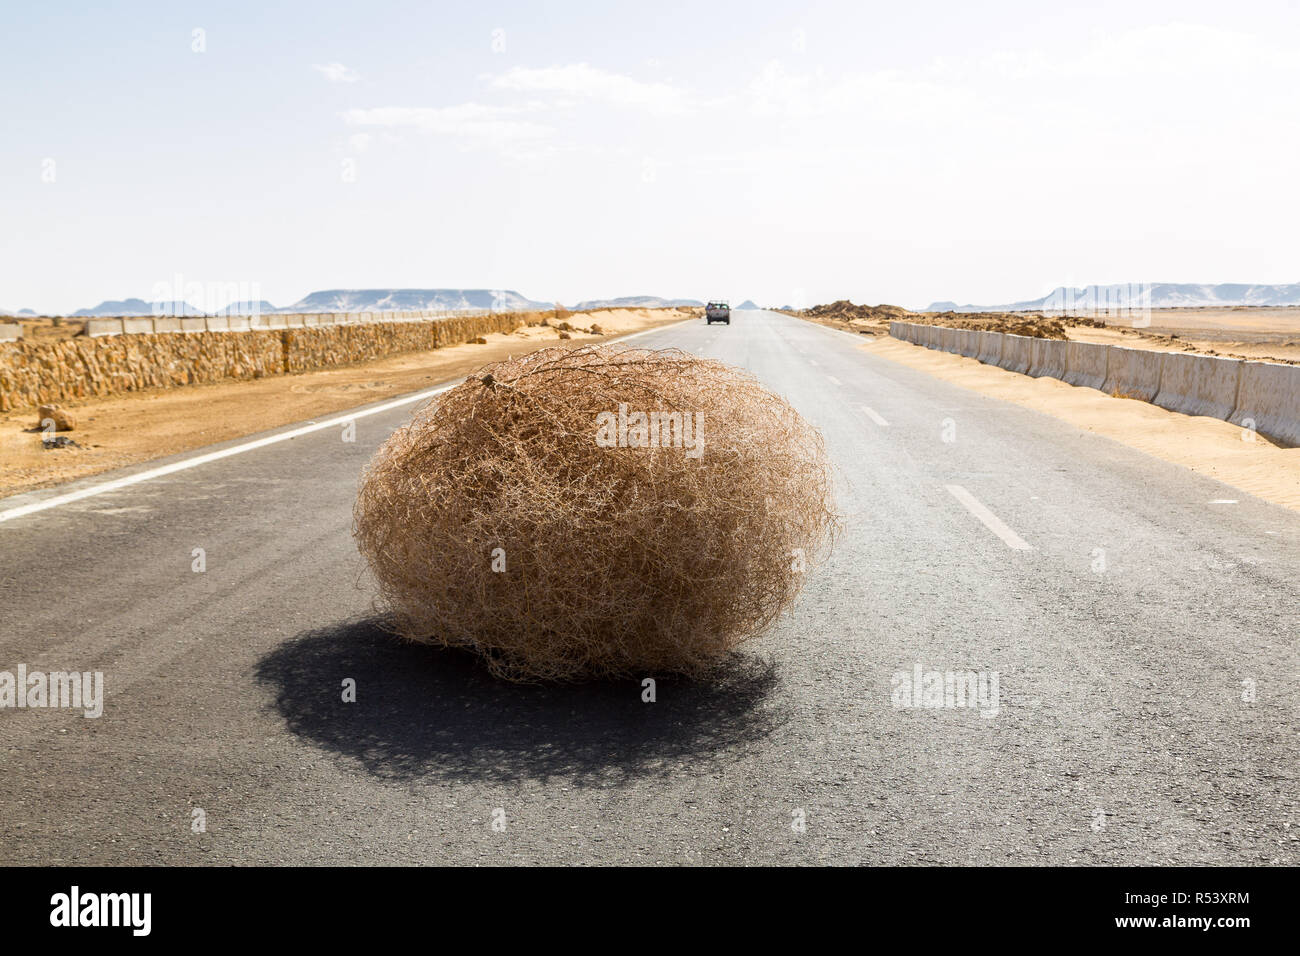 Riesige tumbleweed auf der Autobahn mit sandigen Dünen, zwischen El-Oase Bahariya und Al Farafra oasis, die Westliche Wüste Ägyptens. Sahara. Stockfoto